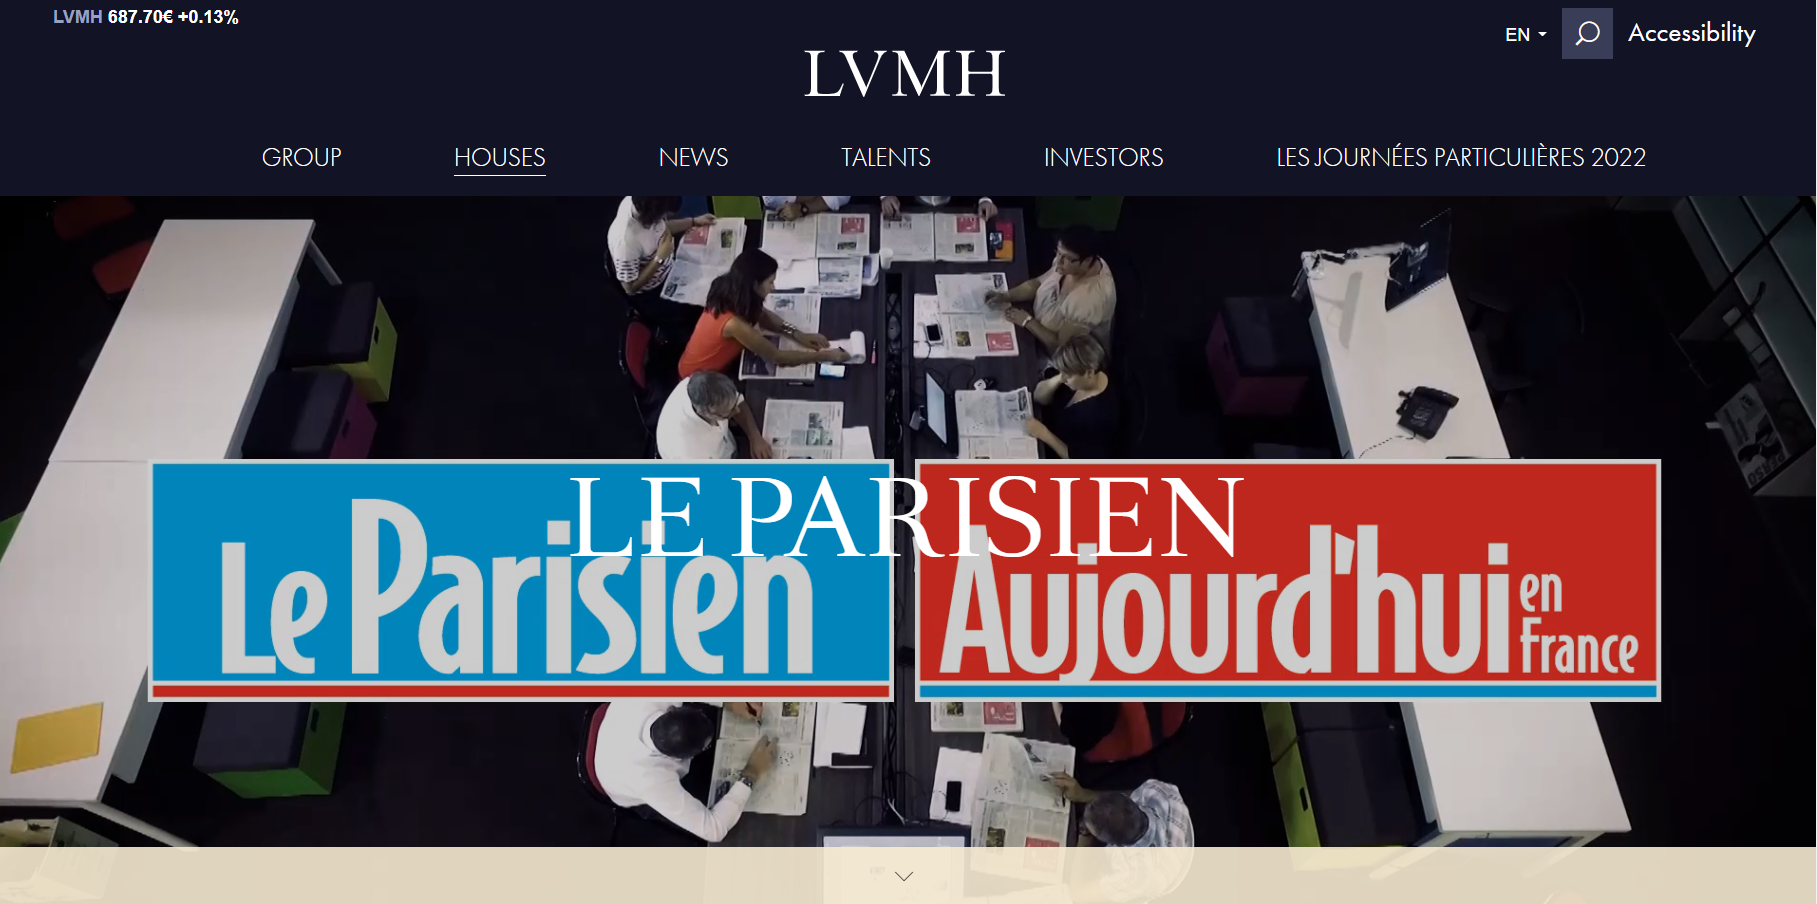 LVMH集团向旗下《巴黎人报》注资6500万欧元，以弥补其亏损